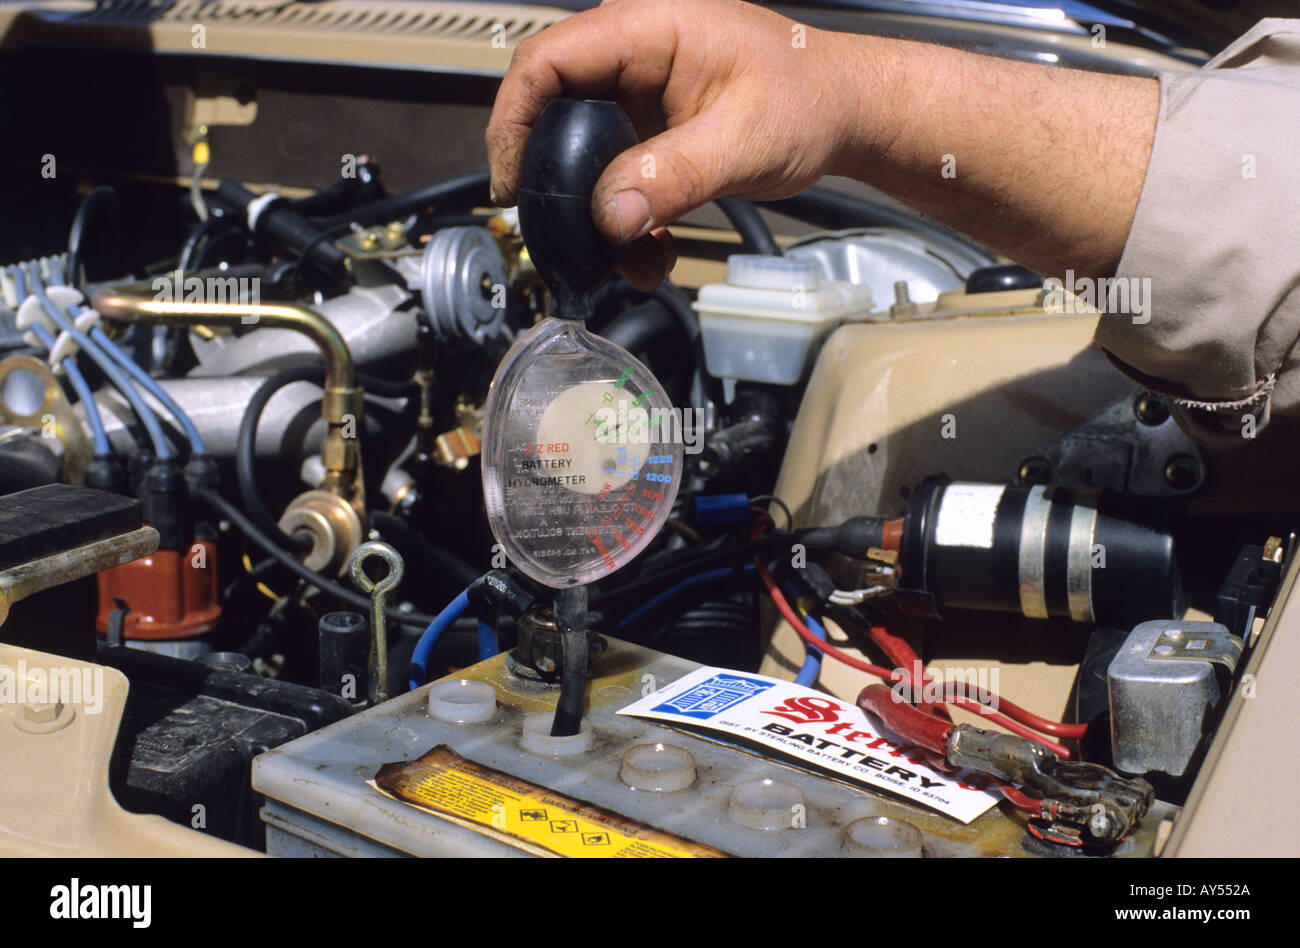 Hydrometer messen das spezifische Gewicht einer Autobatterie  Stockfotografie - Alamy